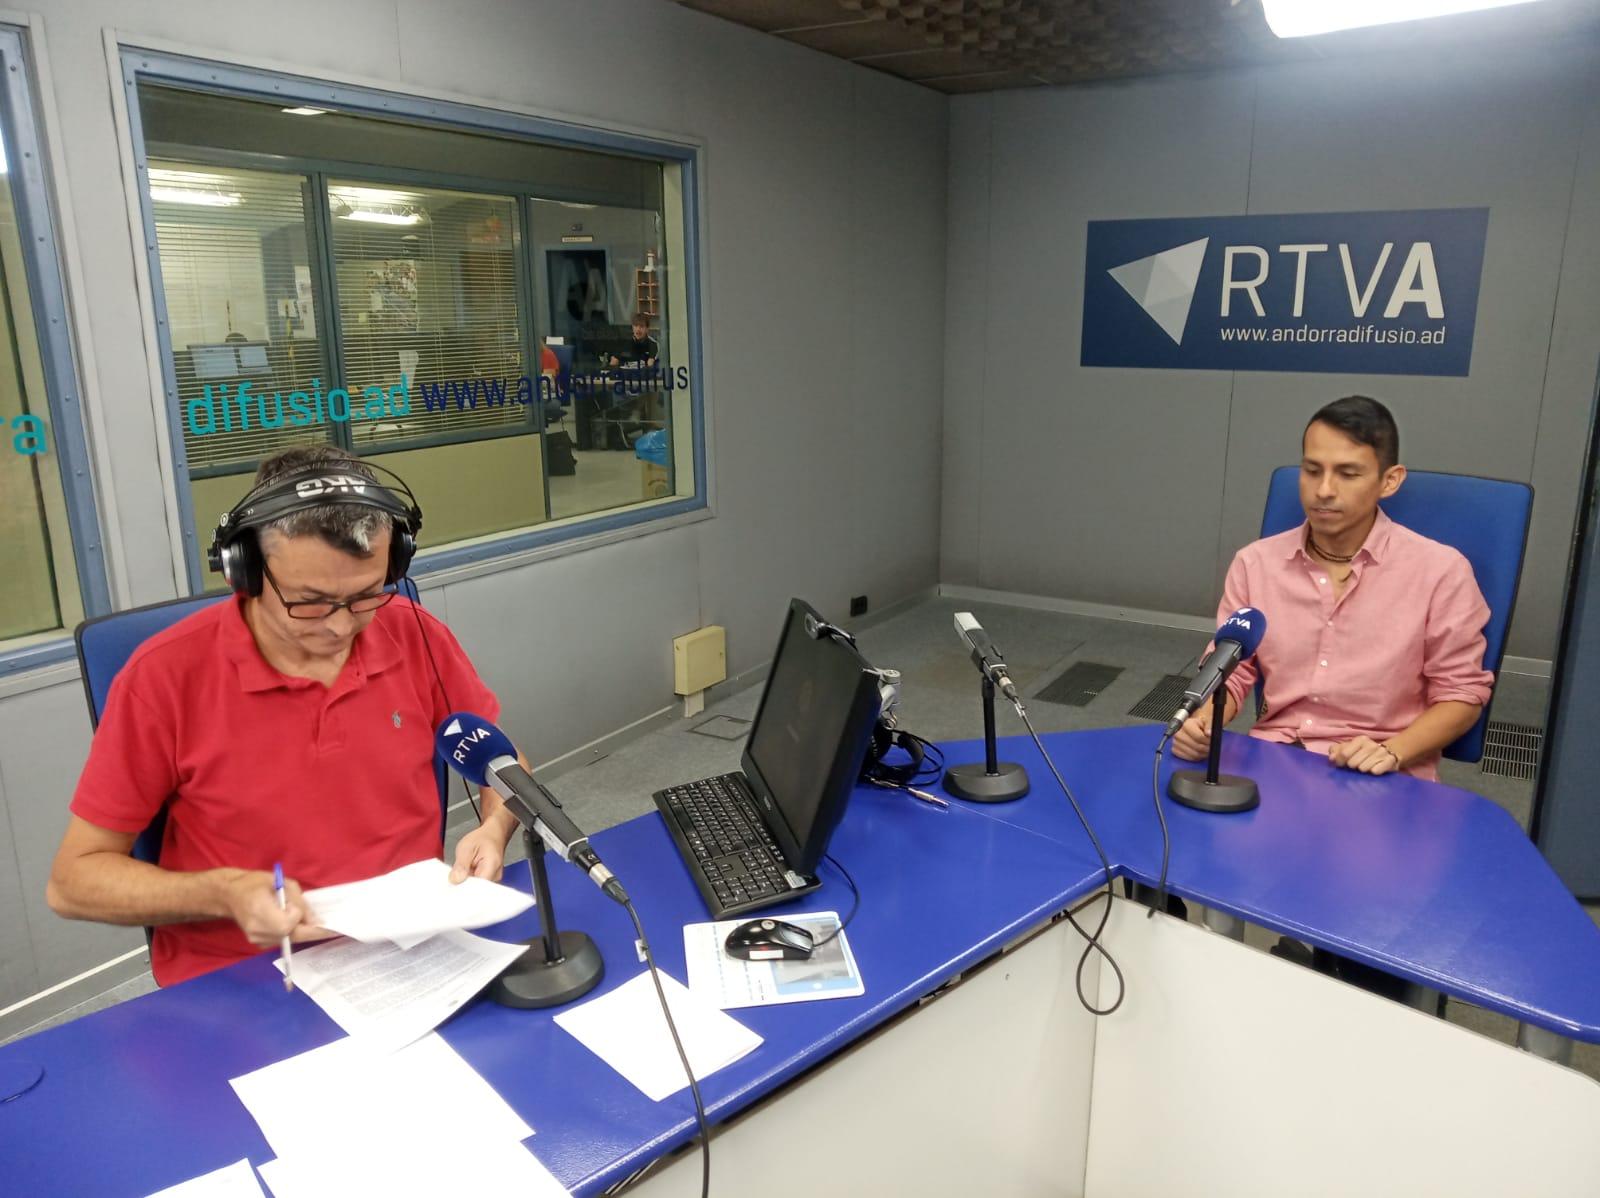 Rolando Edison Vásquez, el resident a Andorra més entrevistat pels mitjans